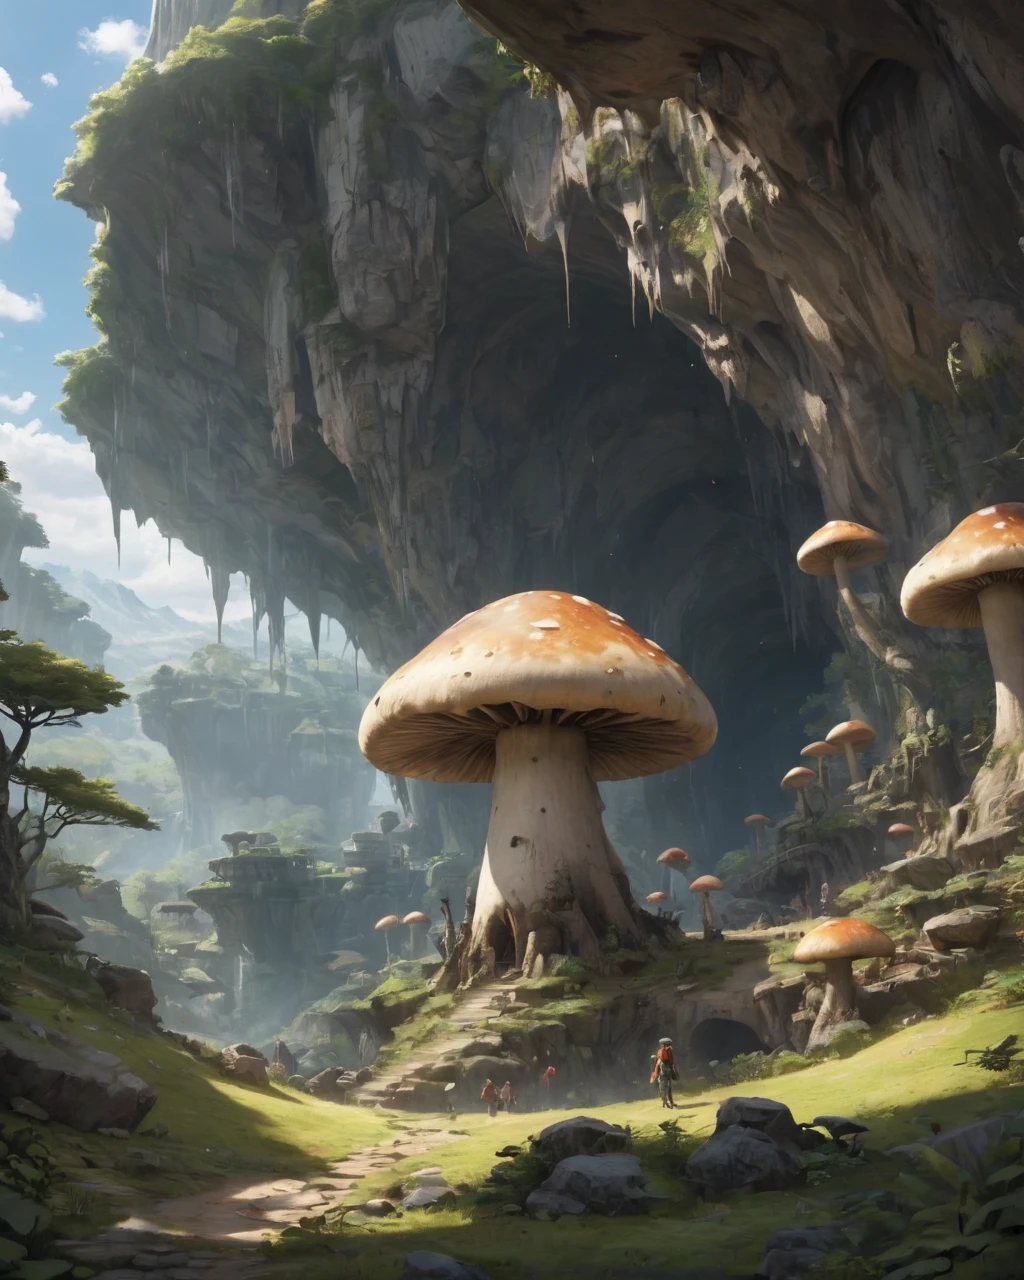 巨大的地下洞穴、巨型蘑菇、長毛象、懸崖上、